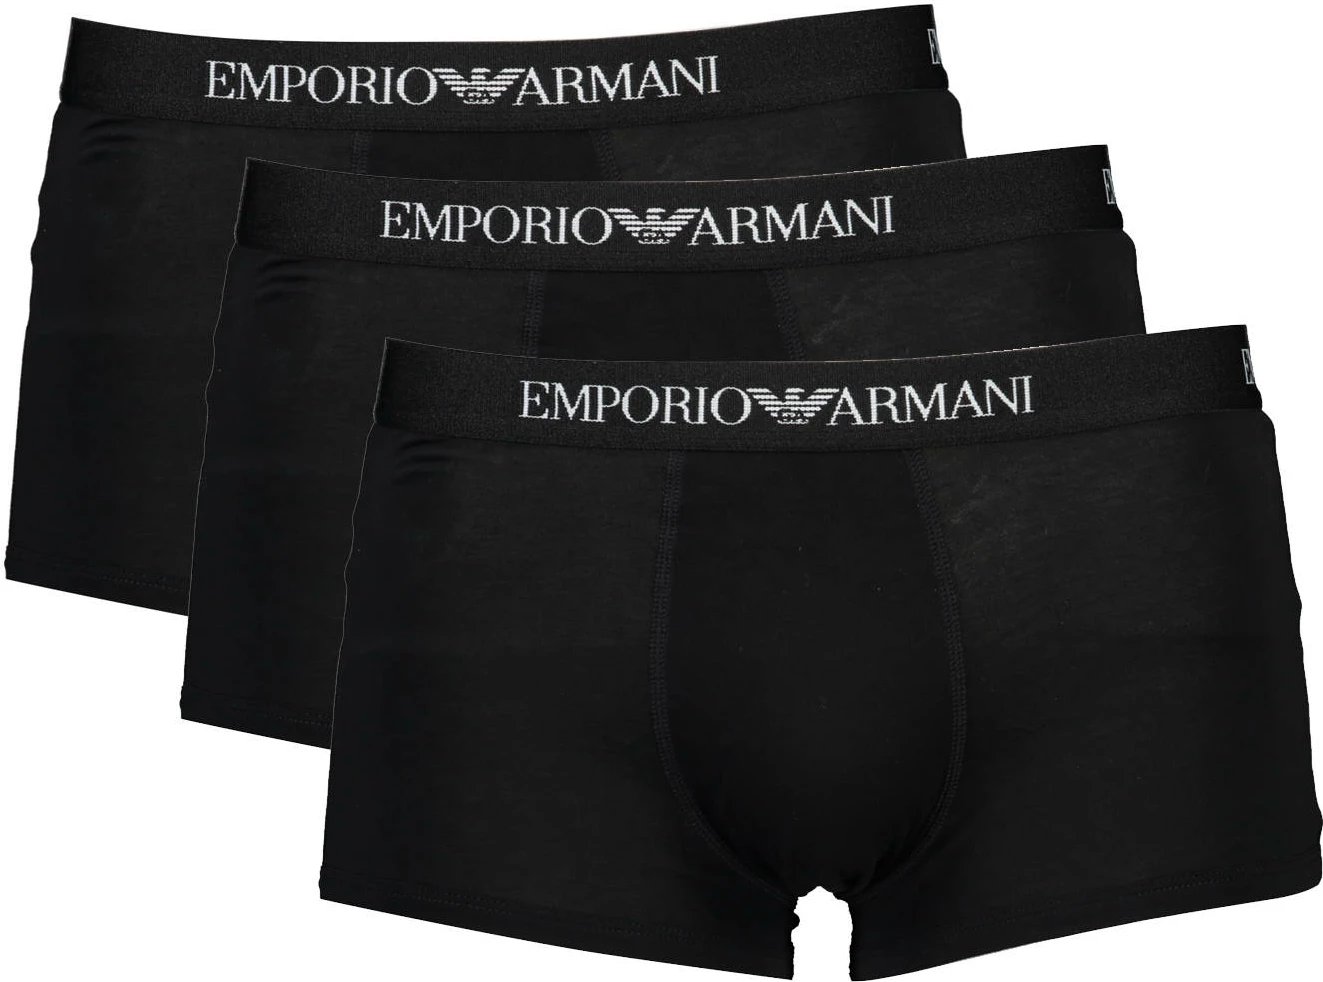 Të brendshme për meshkuj Emporio Armani, 3 palë, të zeza